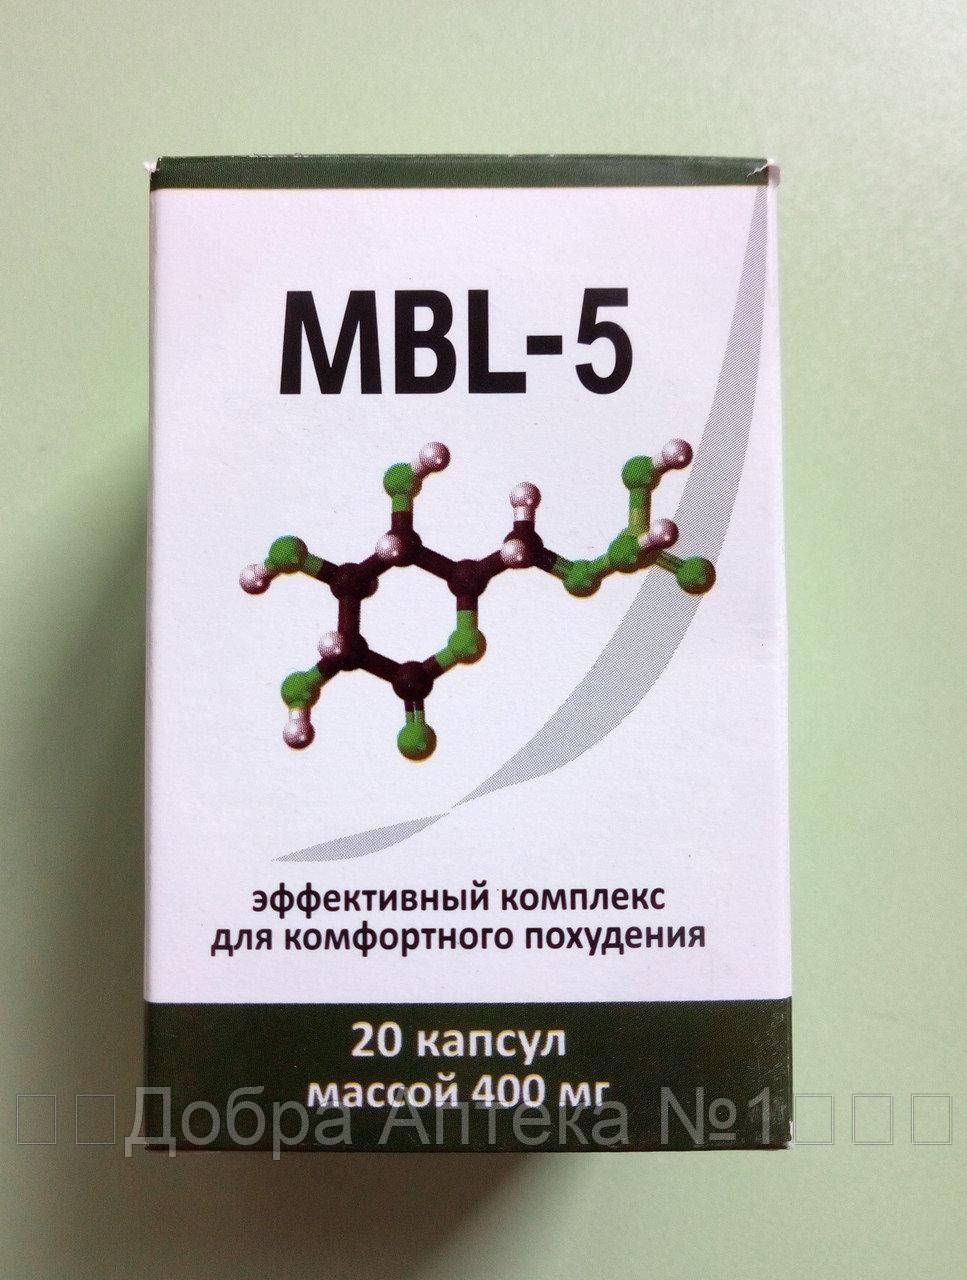 

Капсулы для похудения МБЛ 5 - MBL5